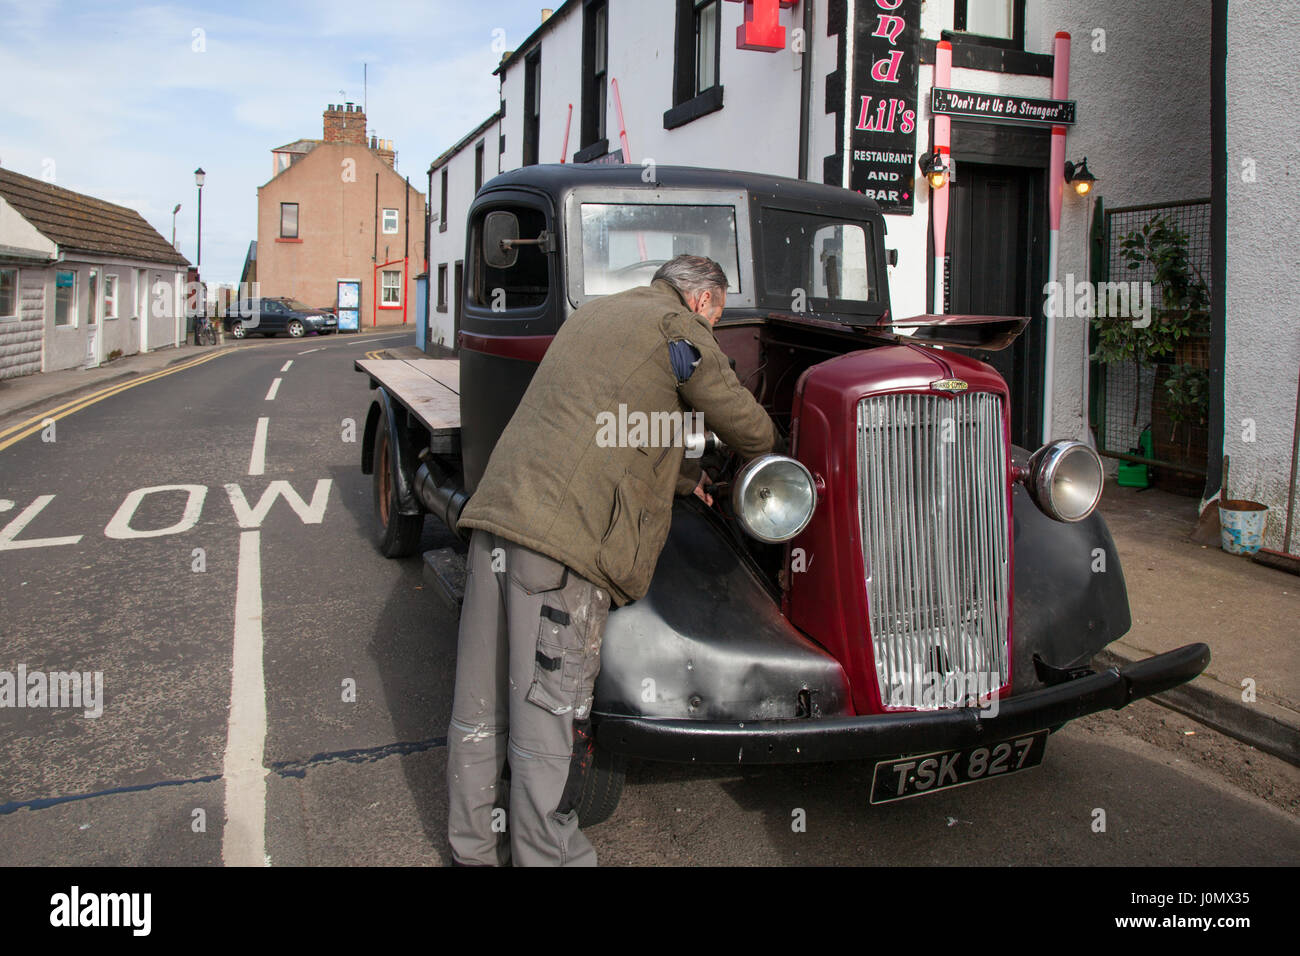 1923 20 anni prima della guerra Morris Commercial Van è frequentato dal proprietario Jim McCallum, che è coinvolto nel suo restauro. Montrose, Scozia, Regno Unito Foto Stock